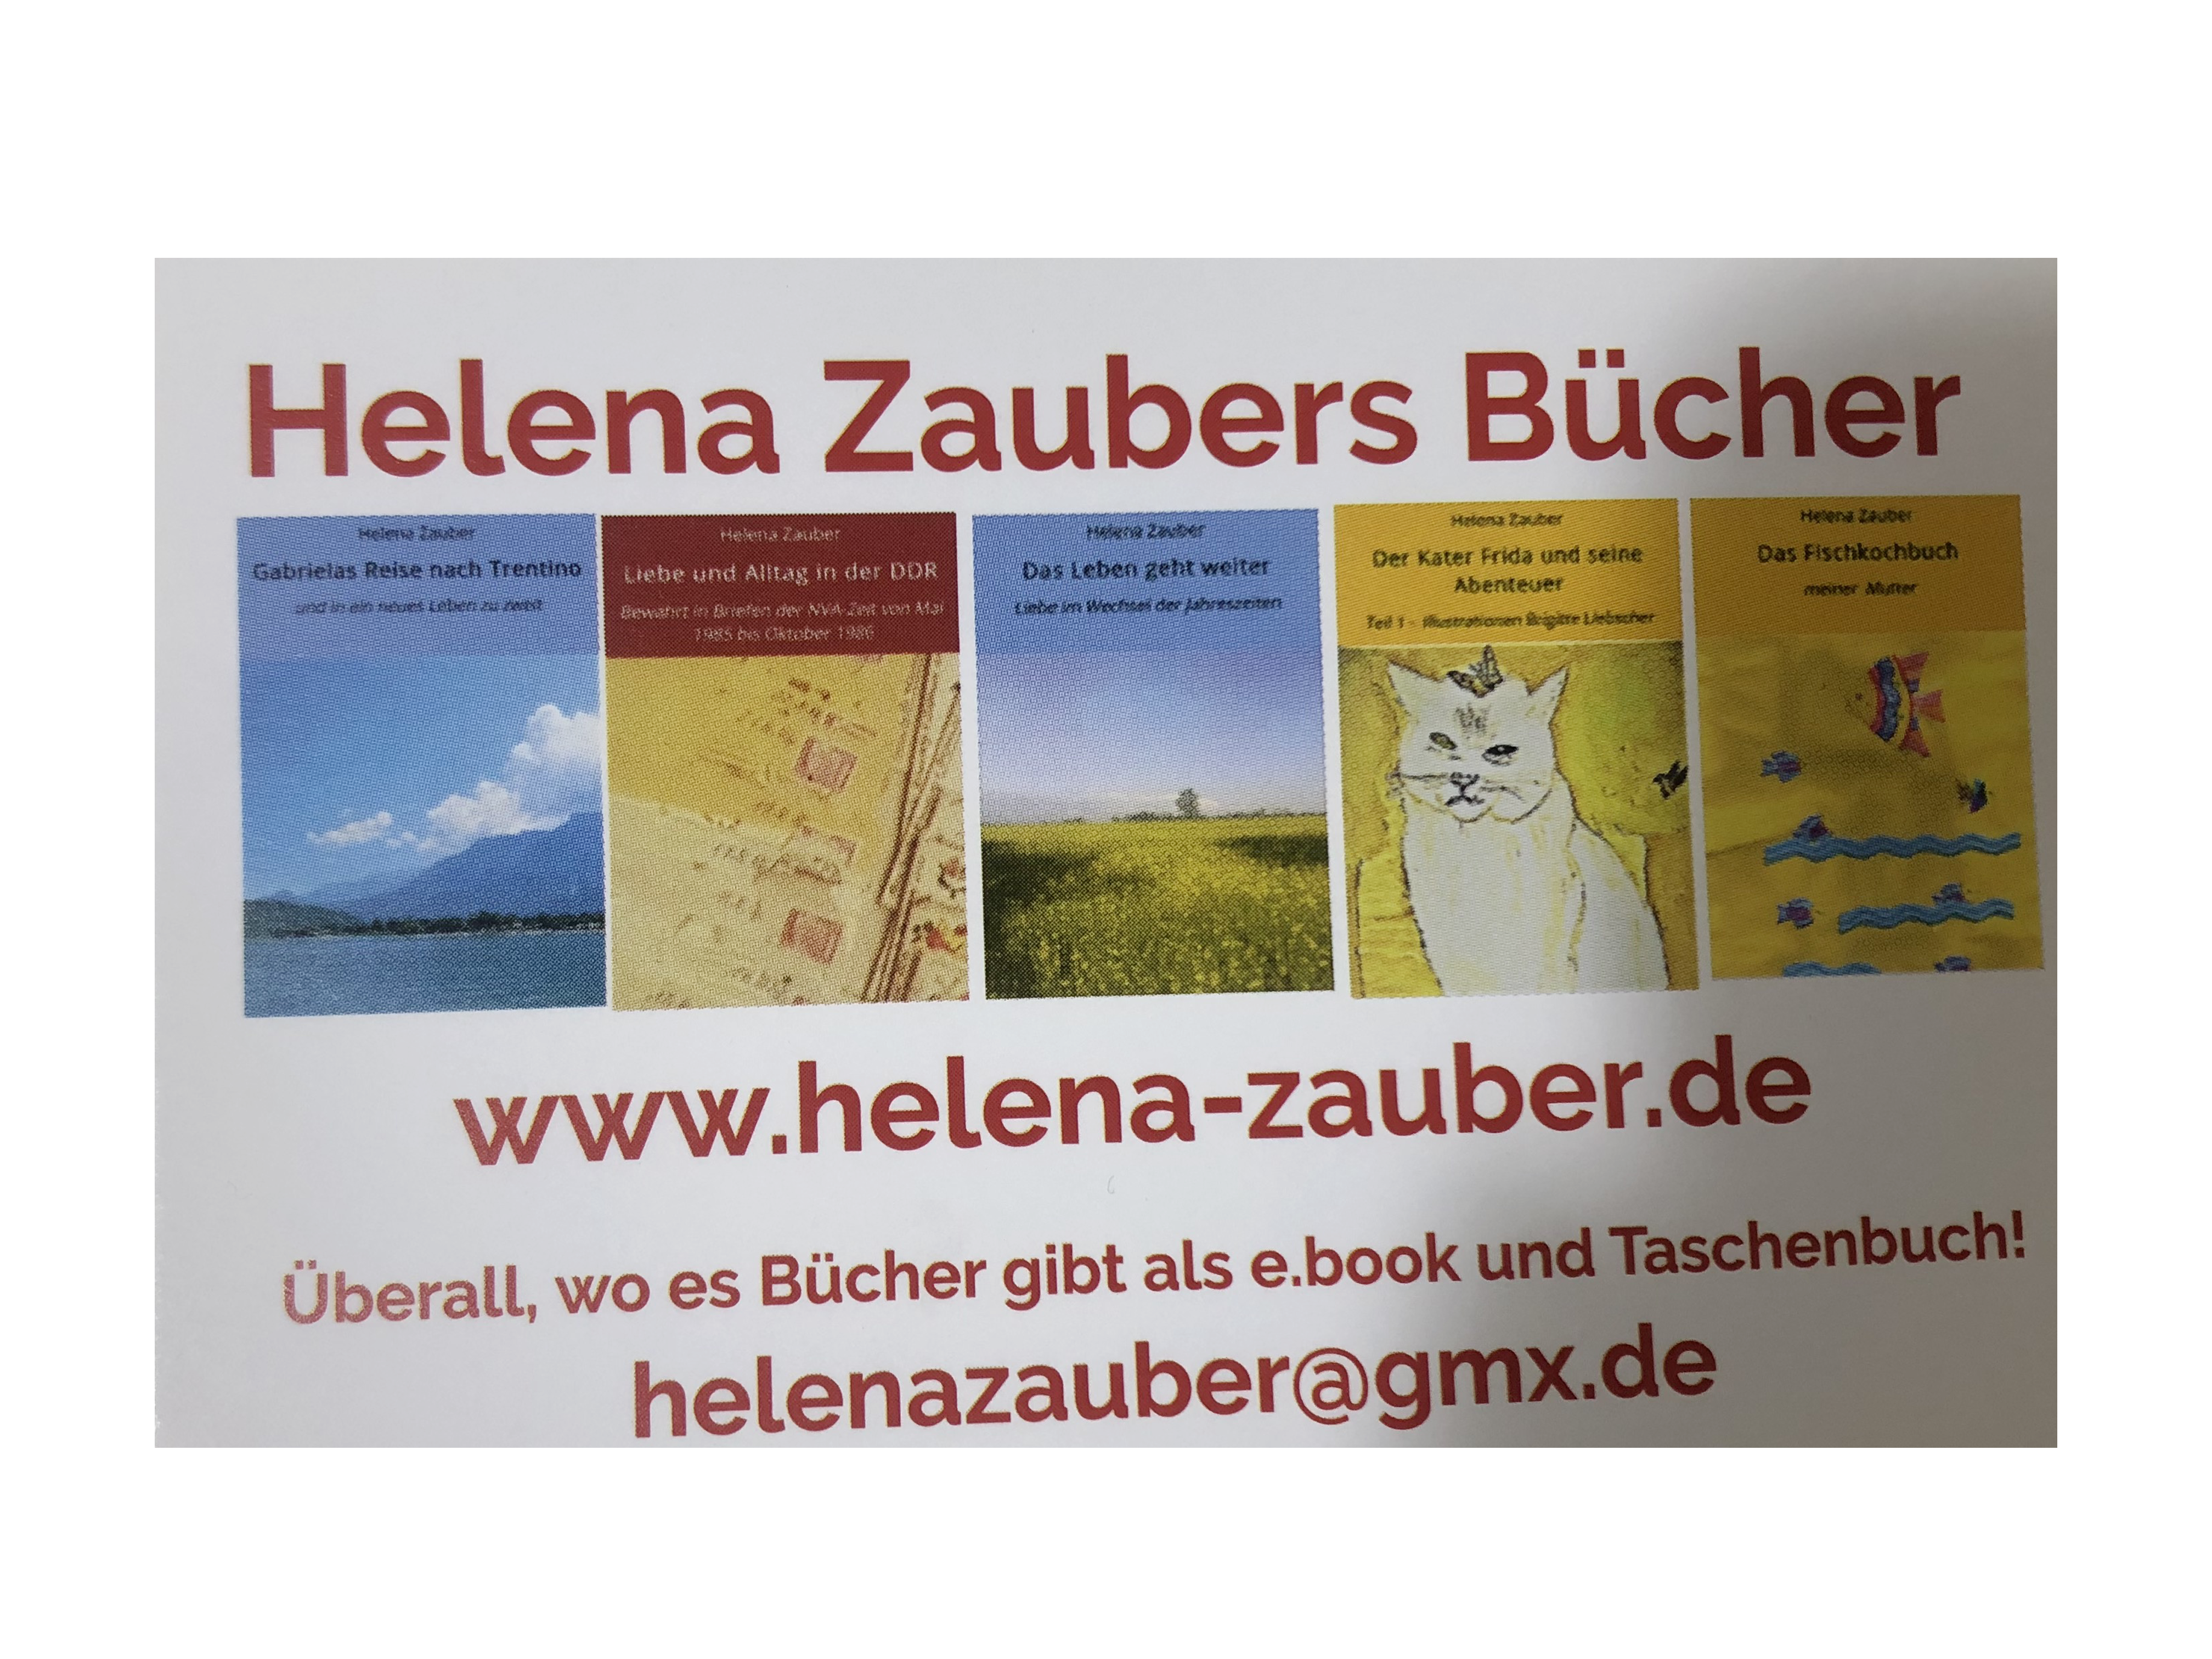 Helena Zaubers Bücher